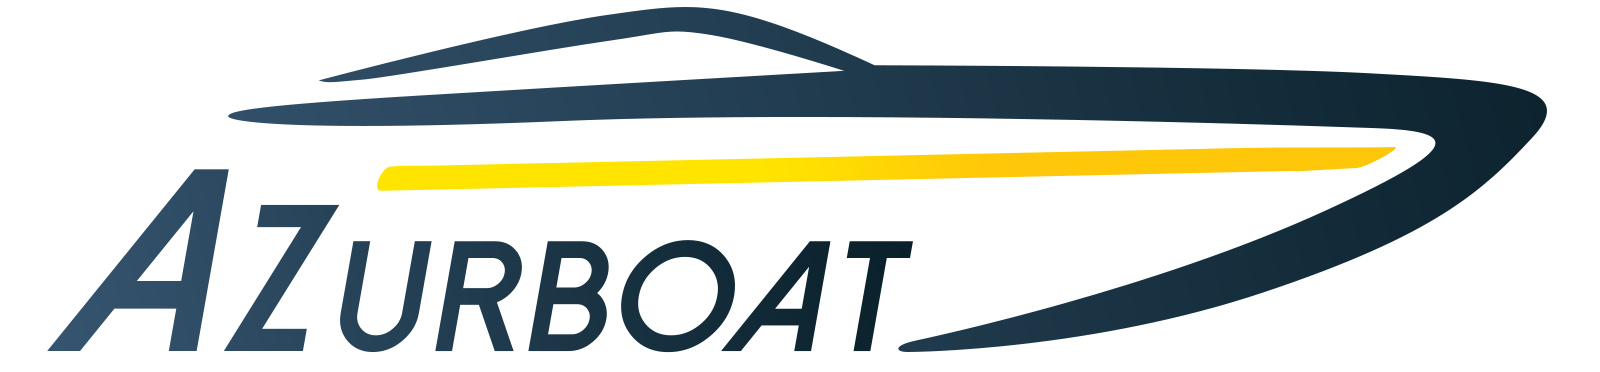 Azur Boat Conseil : Location, Gardiennage et Entretien de Bateaux